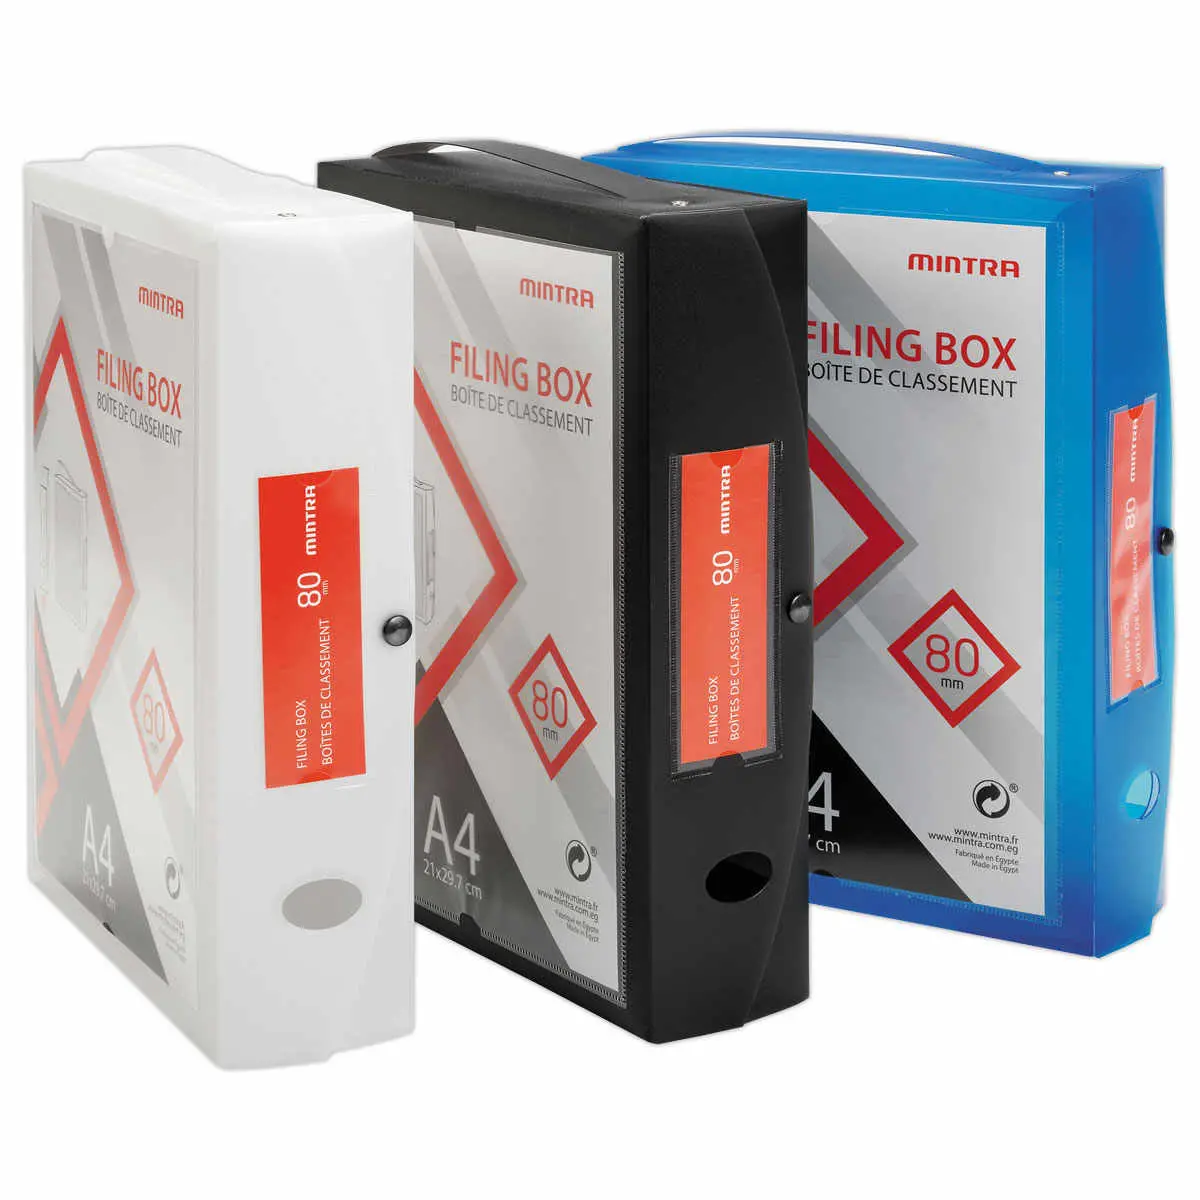 Boîte valisette personnalisable  en polypropylène A4 - Dos 8 cm noir photo du produit